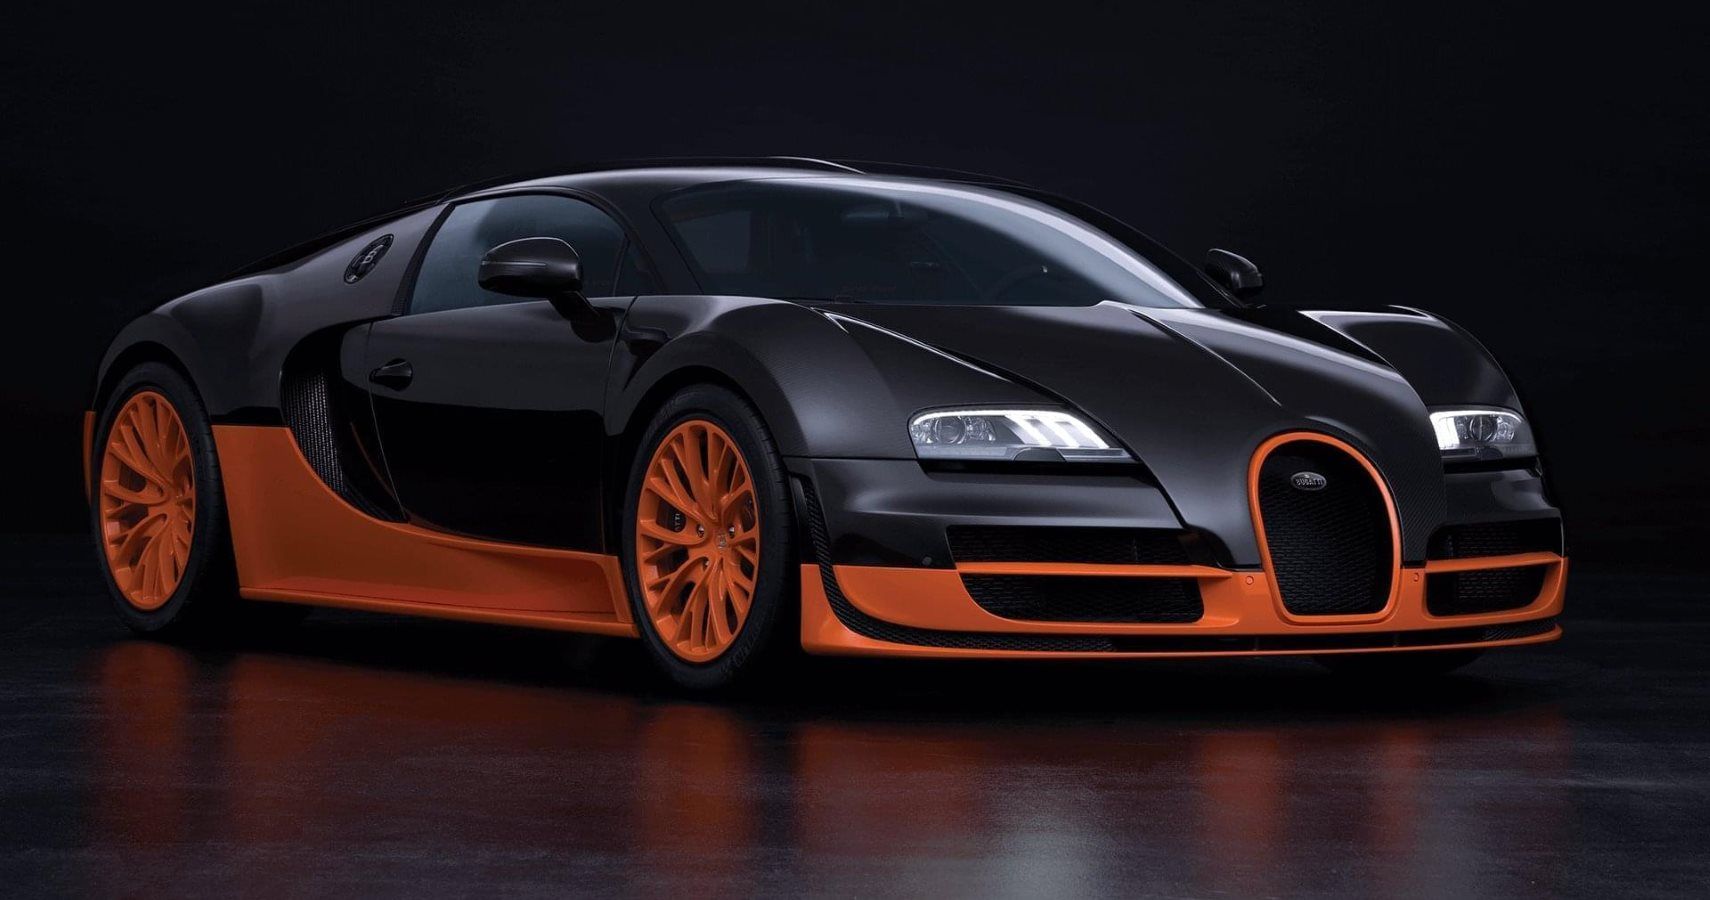 Watch A Bugatti Veyron Go 250 MPH On The Autobahn